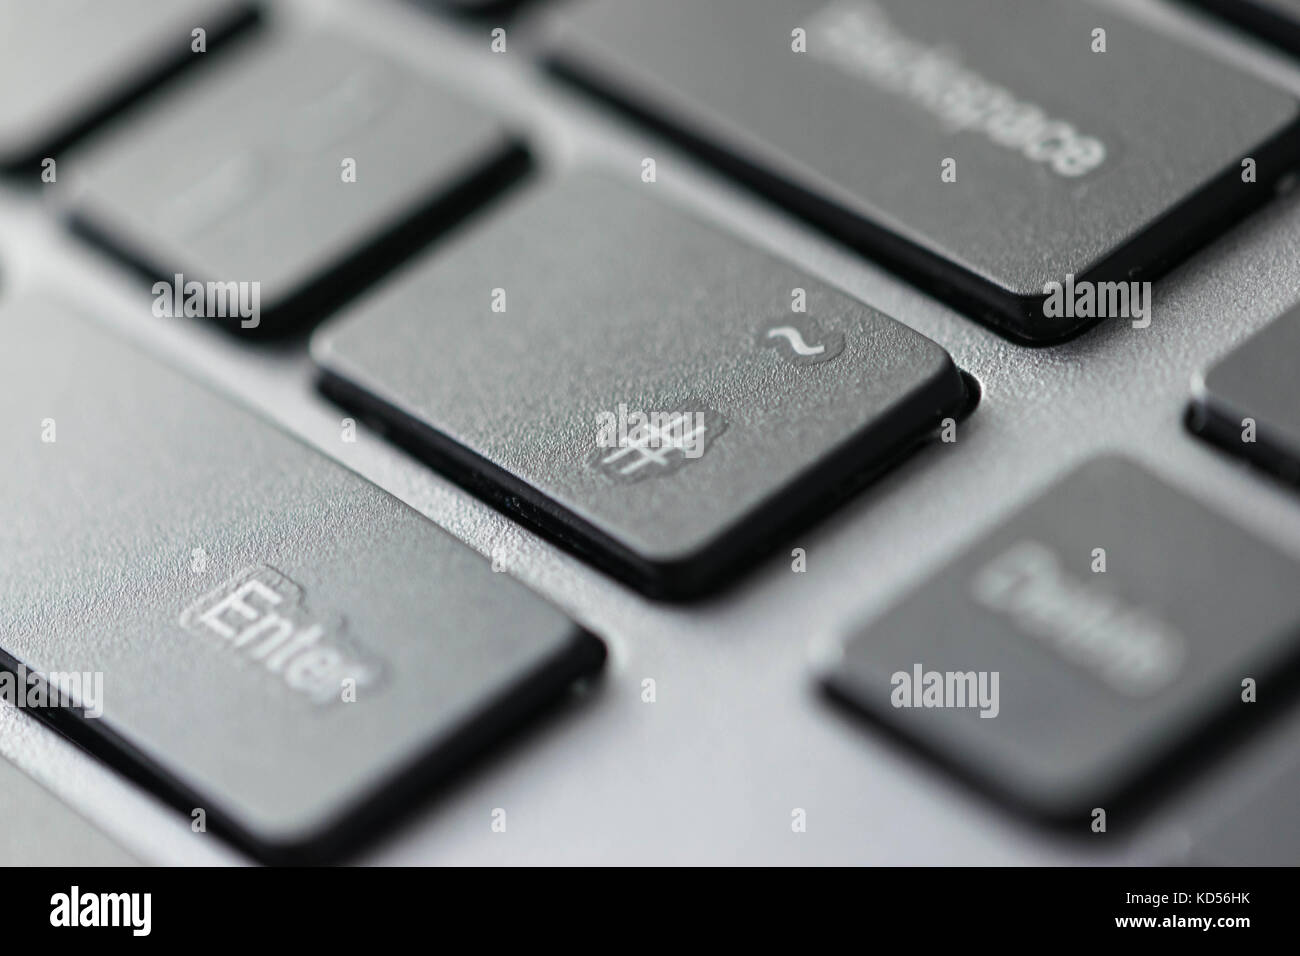 Vue rapprochée de l'icône de hashtag sur les touches du clavier d'un  ordinateur Photo Stock - Alamy